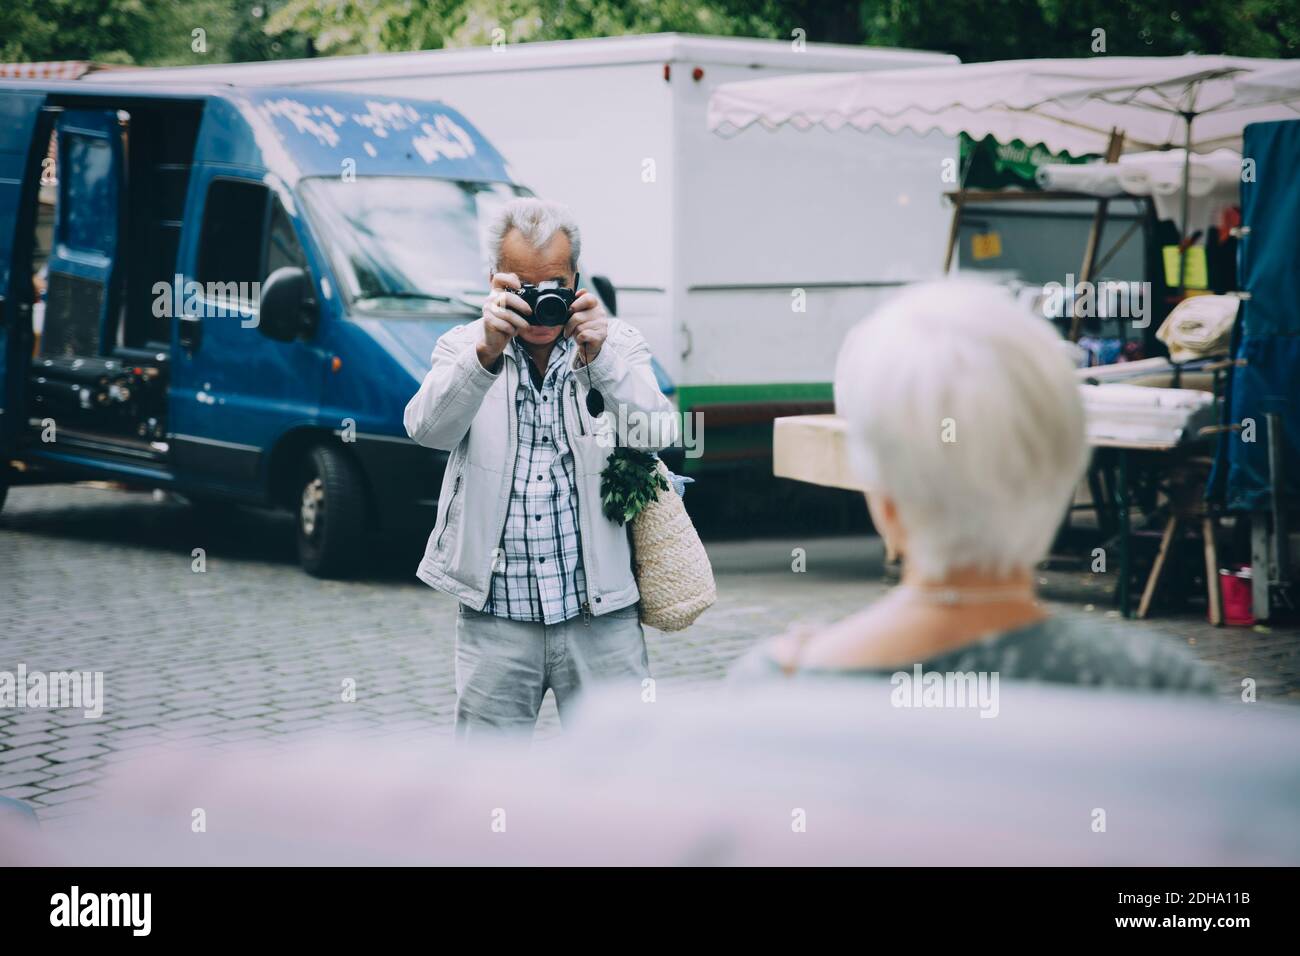 Turista mayor tomando fotografía de mujer mientras está de pie en la ciudad Foto de stock